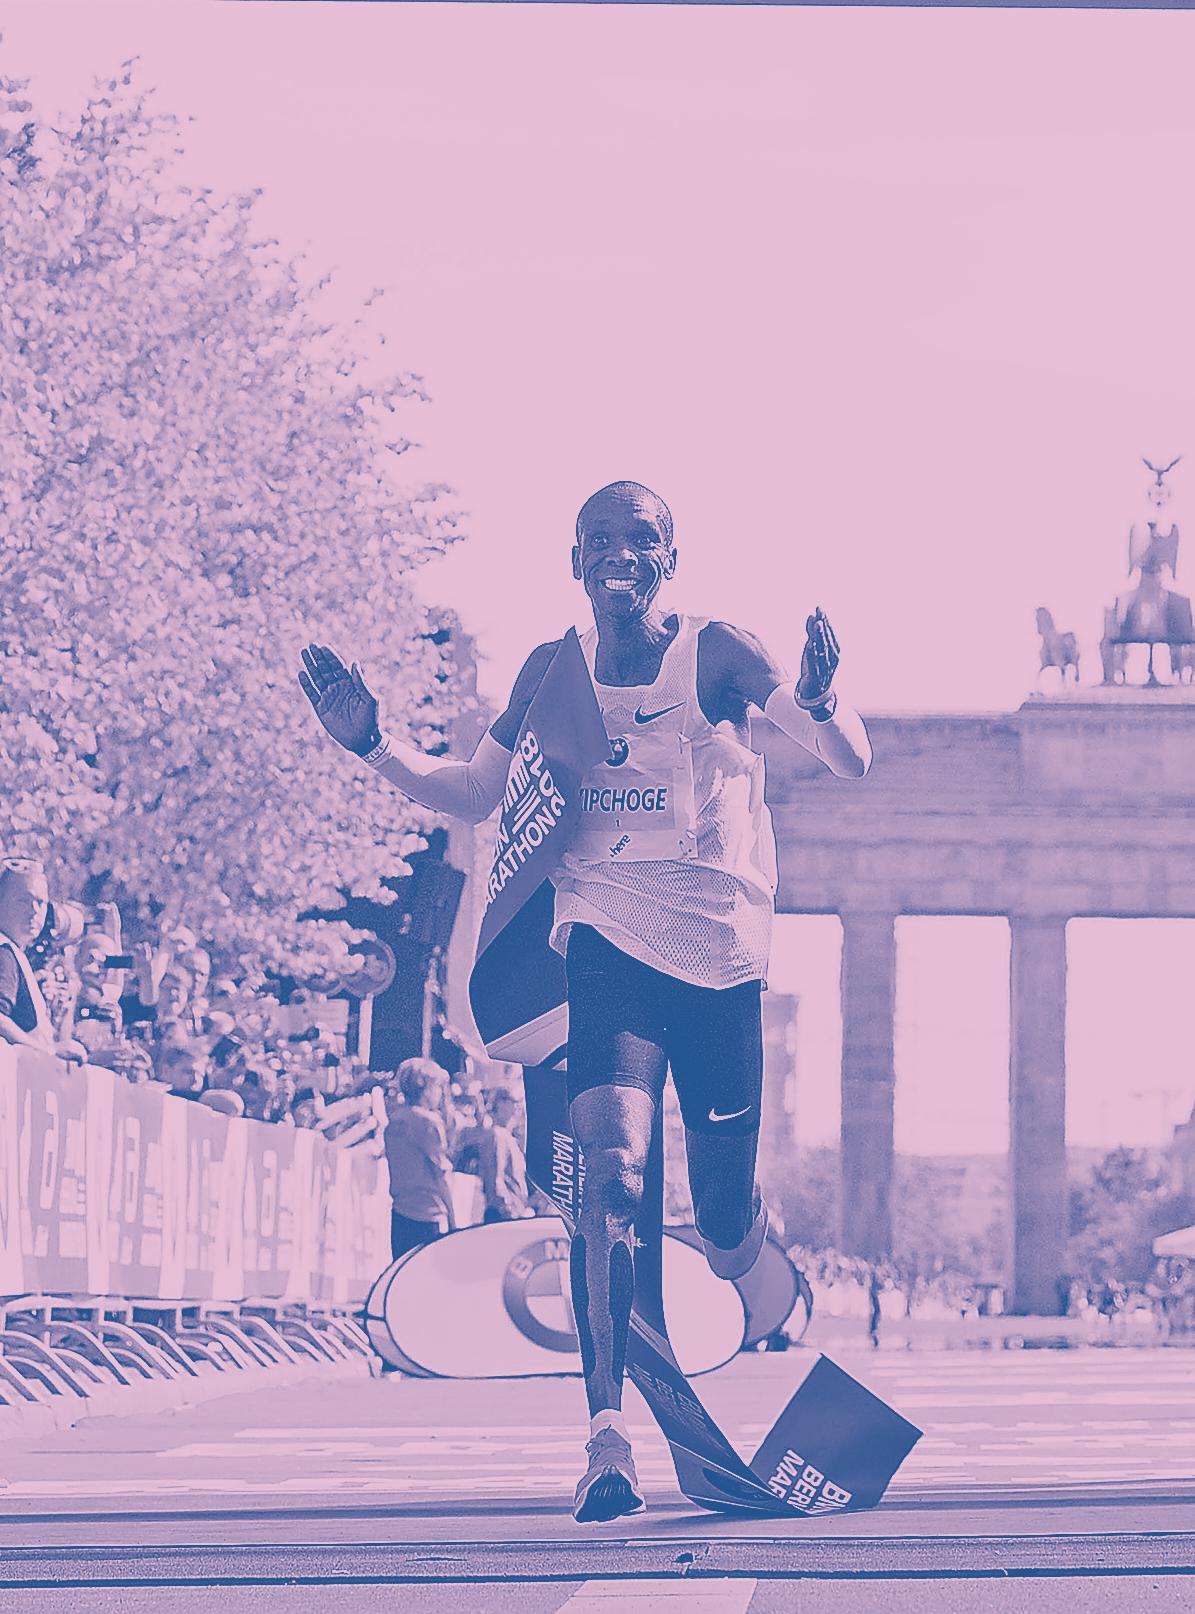 Ein Bild für die Ewigkeit: Eliud Kipchoge am Ziel in Berlin. Wie lange hält sein Weltrekord?